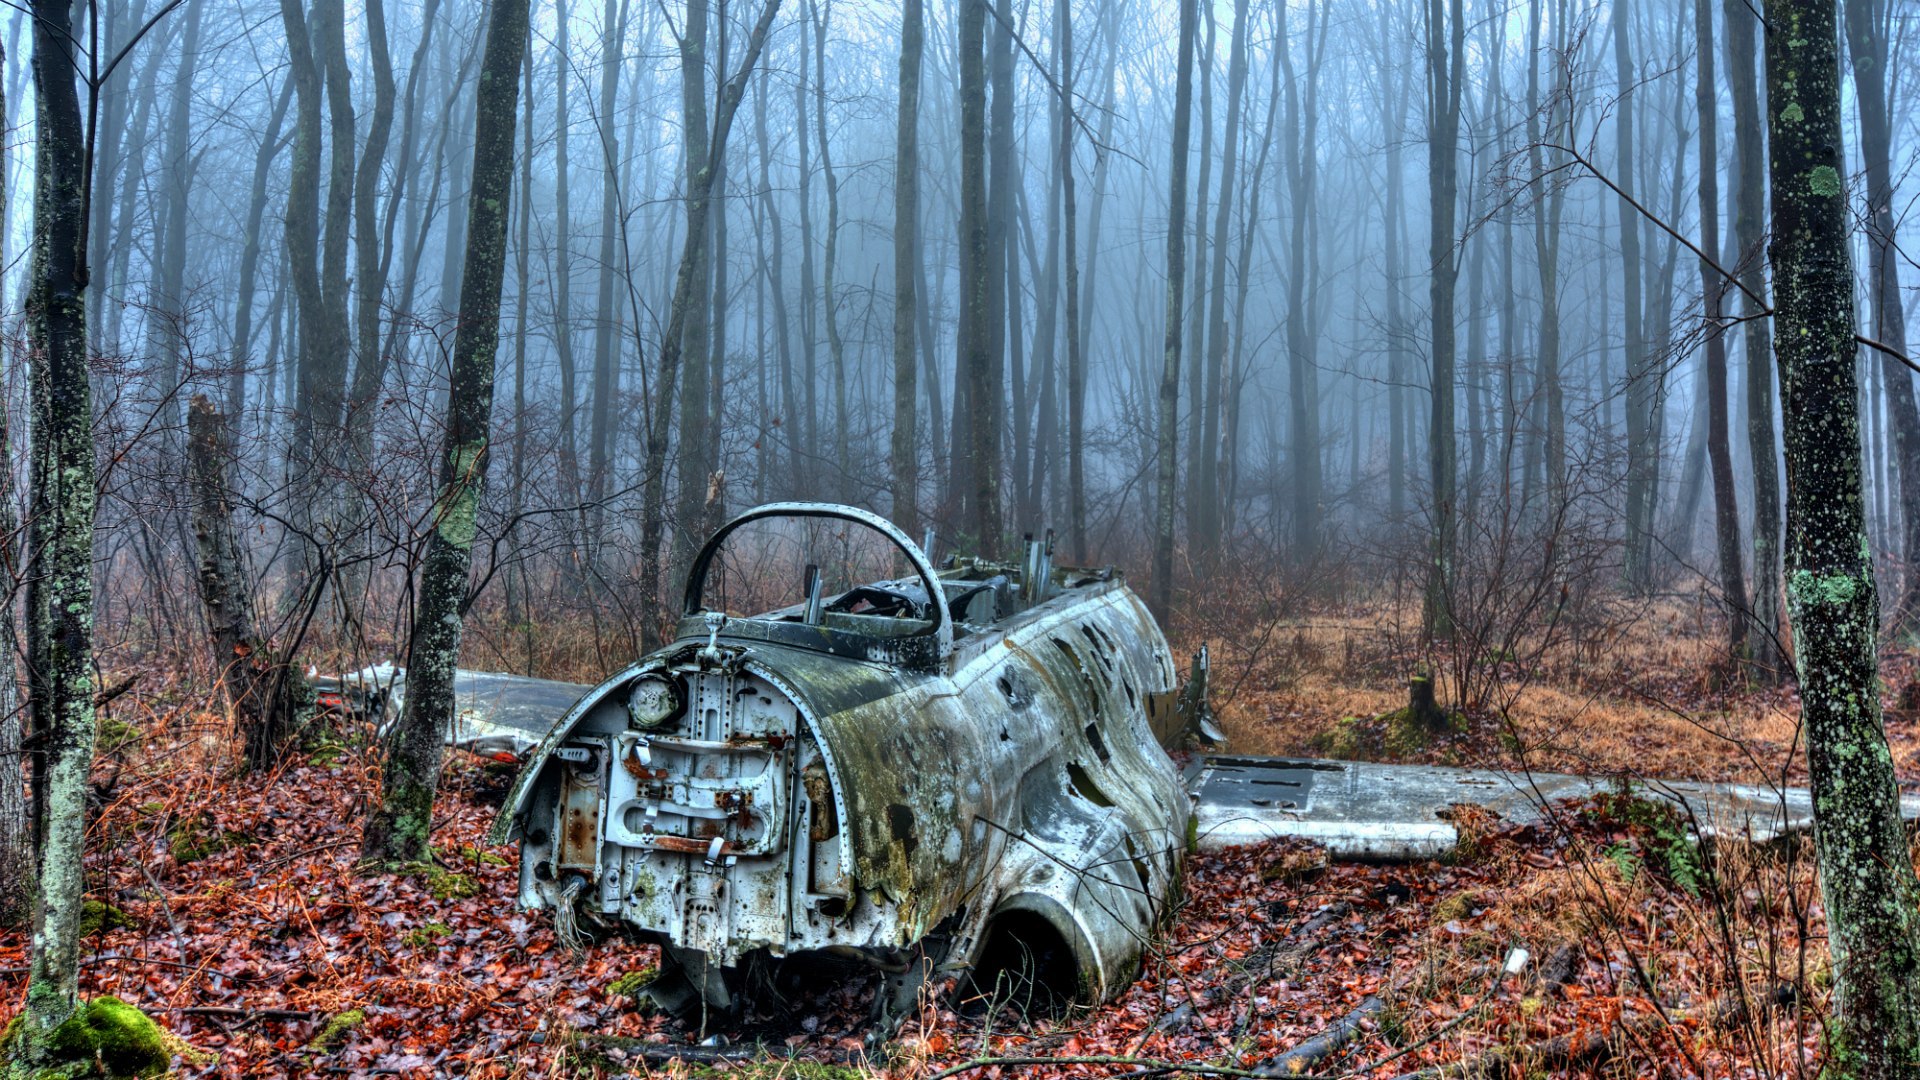 Старые заброшенные машины